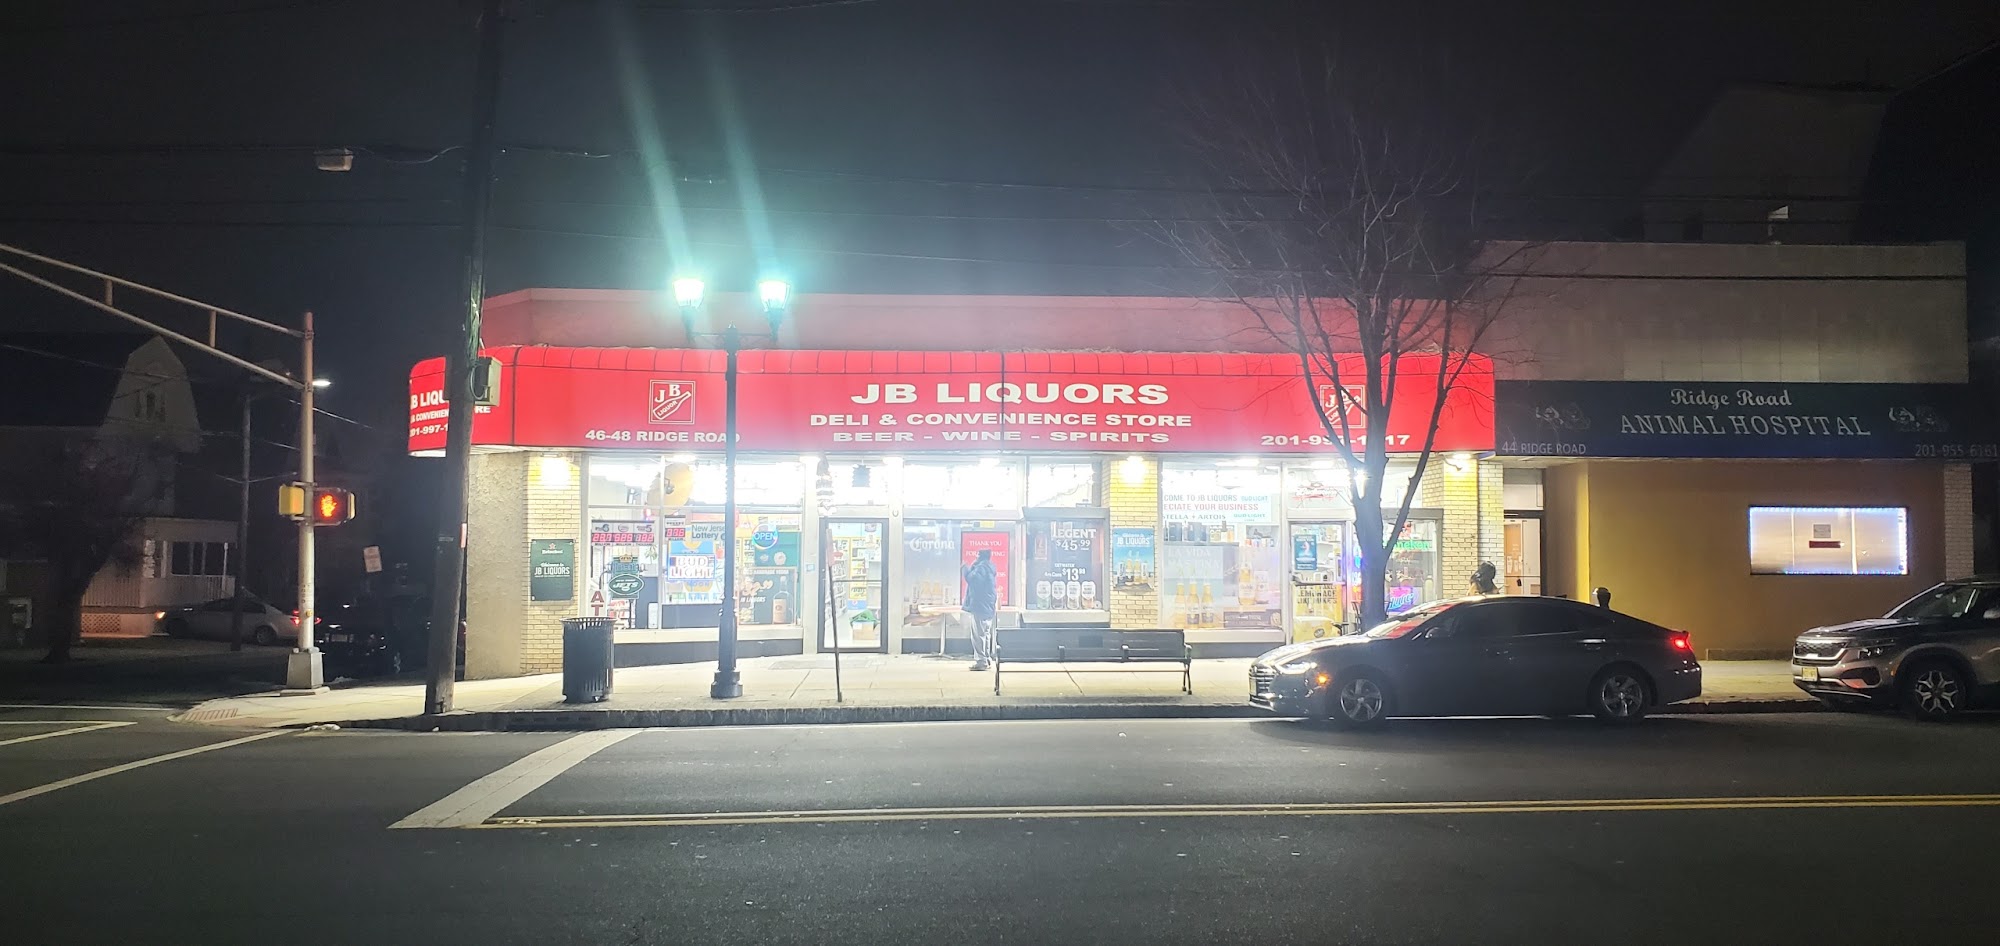 JB Liquors & Convenience